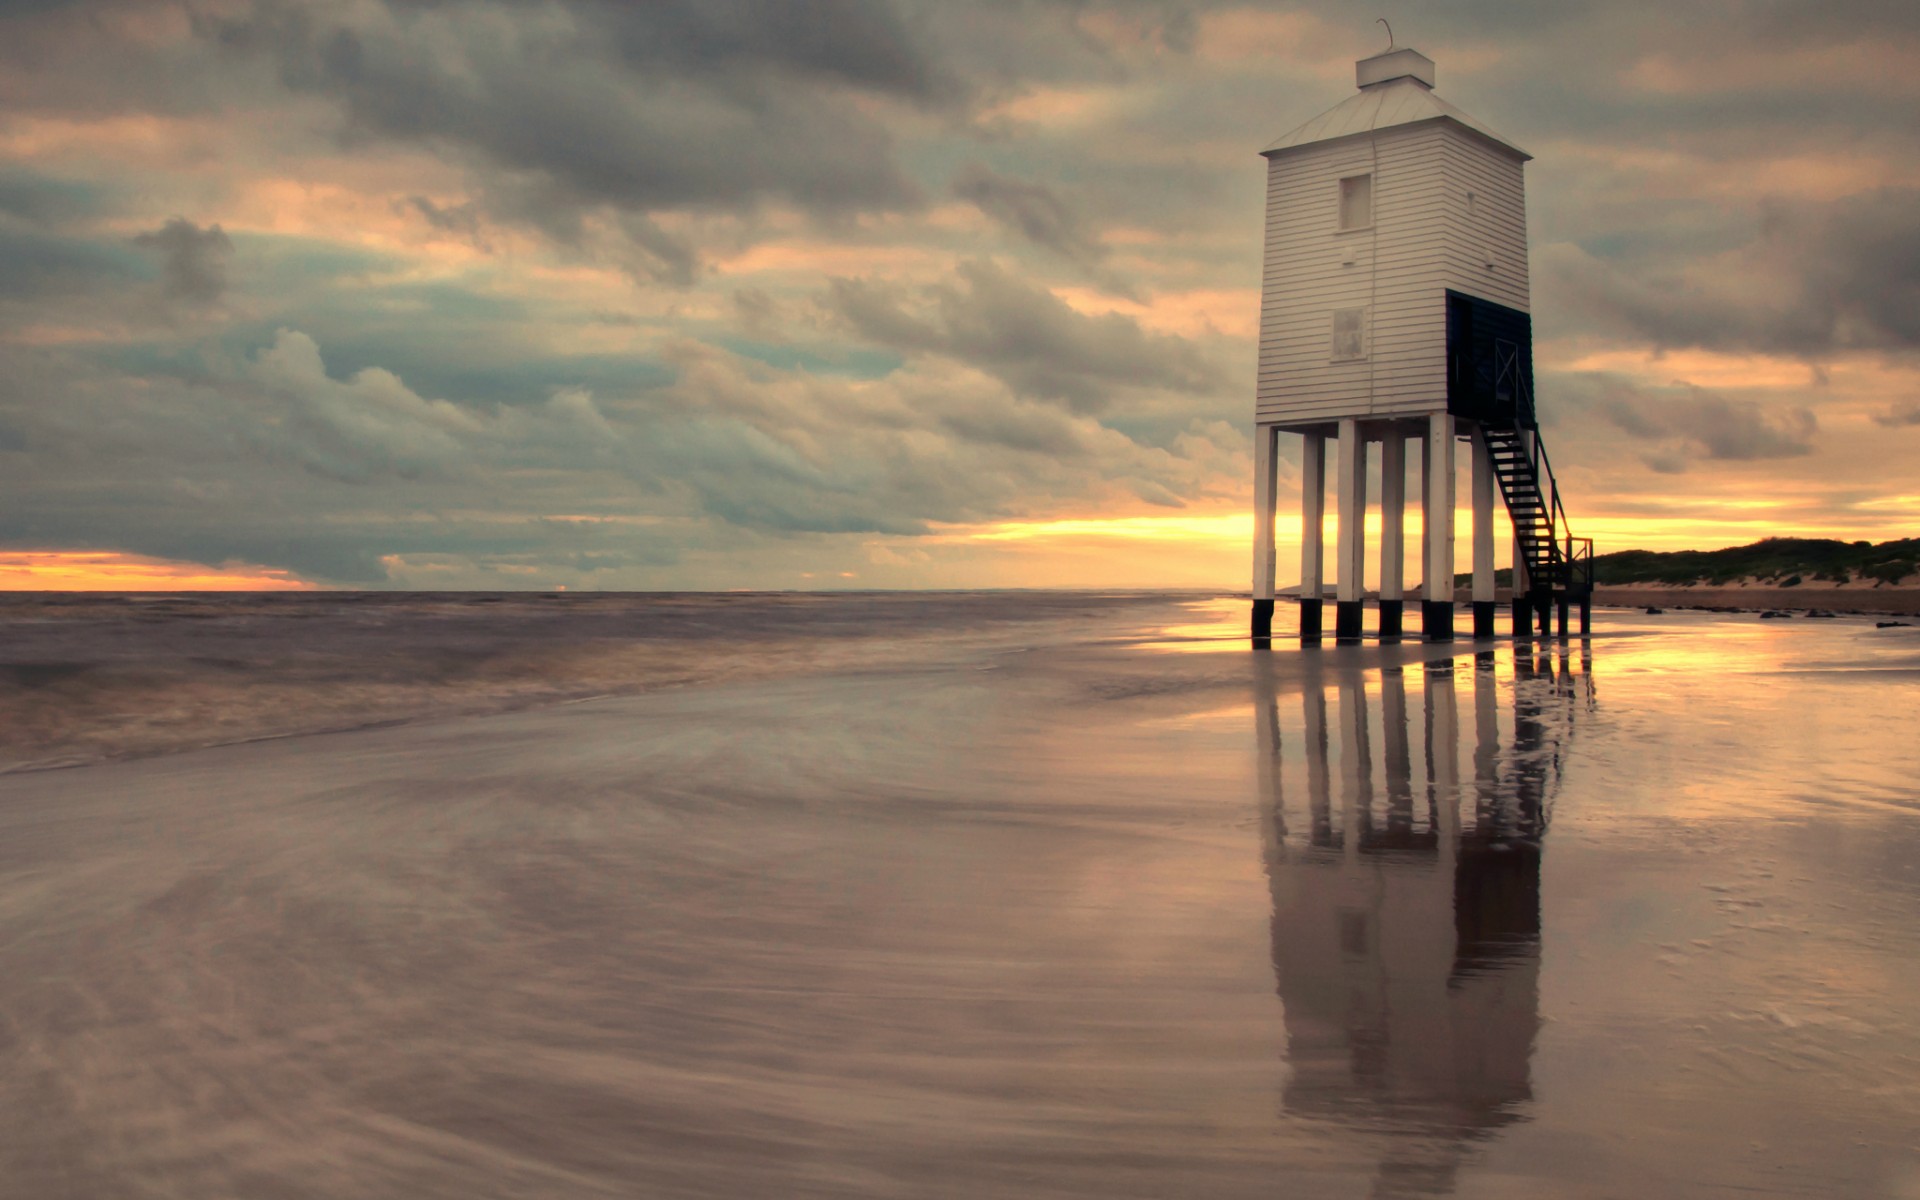 uk, England, Lighthouse, Beach, Sea, Evening, Sunset, Sky, Clouds Wallpaper